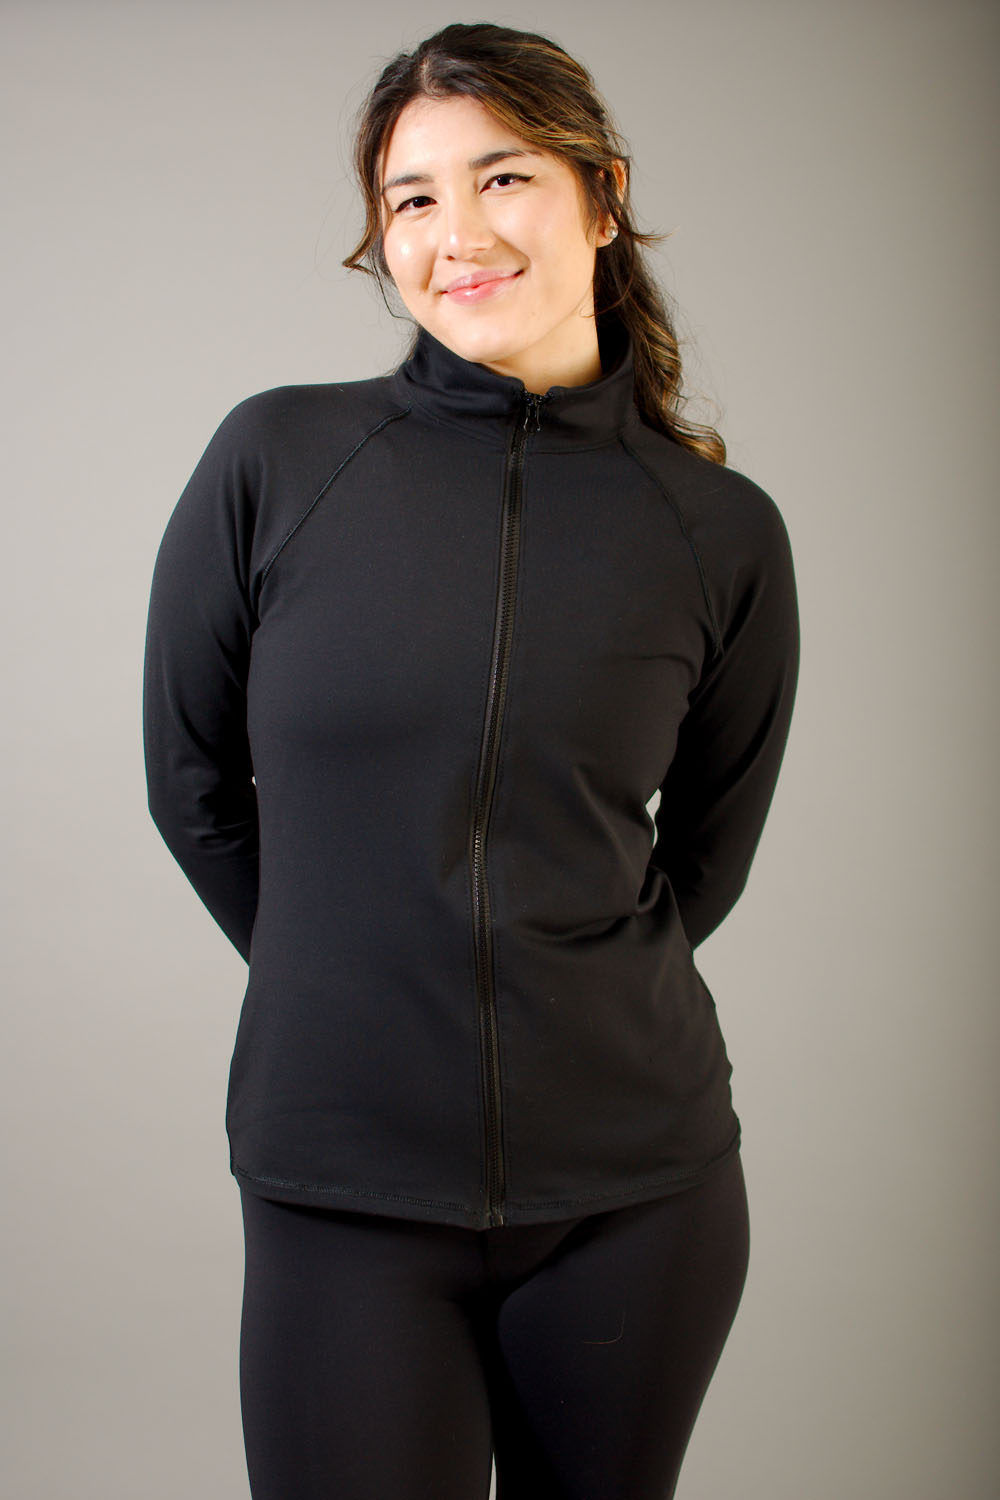 Vêtement Création Wissa fait 100% au Québec : Veste de survêtement en supplex noir - Sans poches - Pepaca